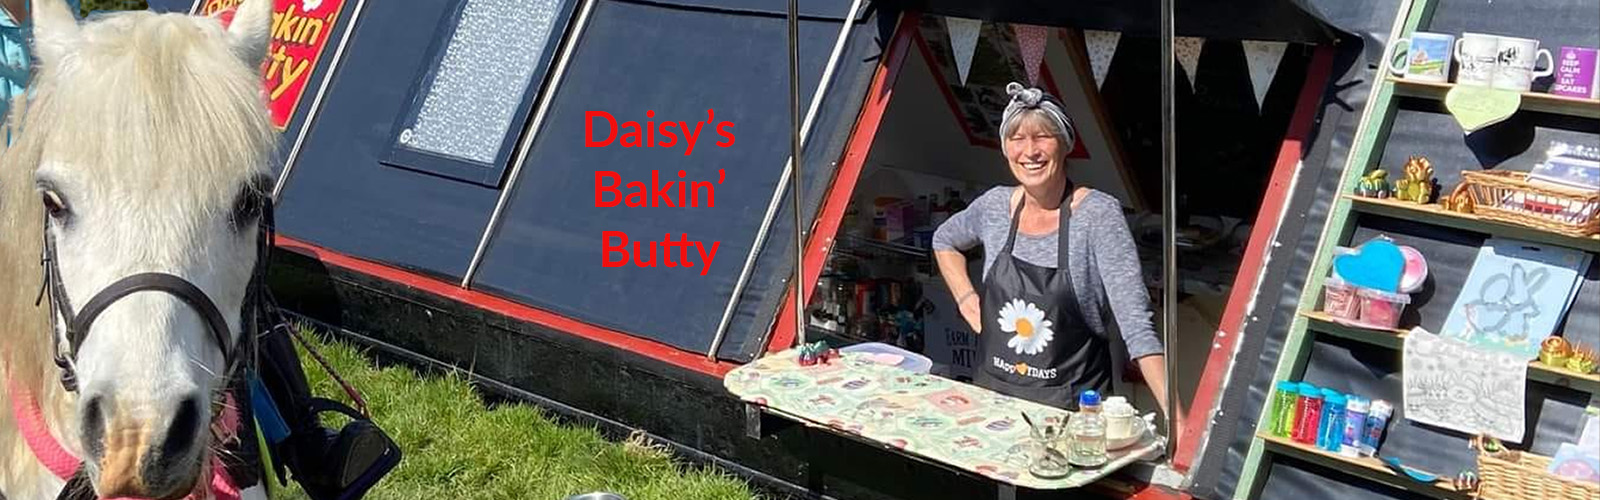 Daisy Hampshire - Daisy's Bakin' Butty